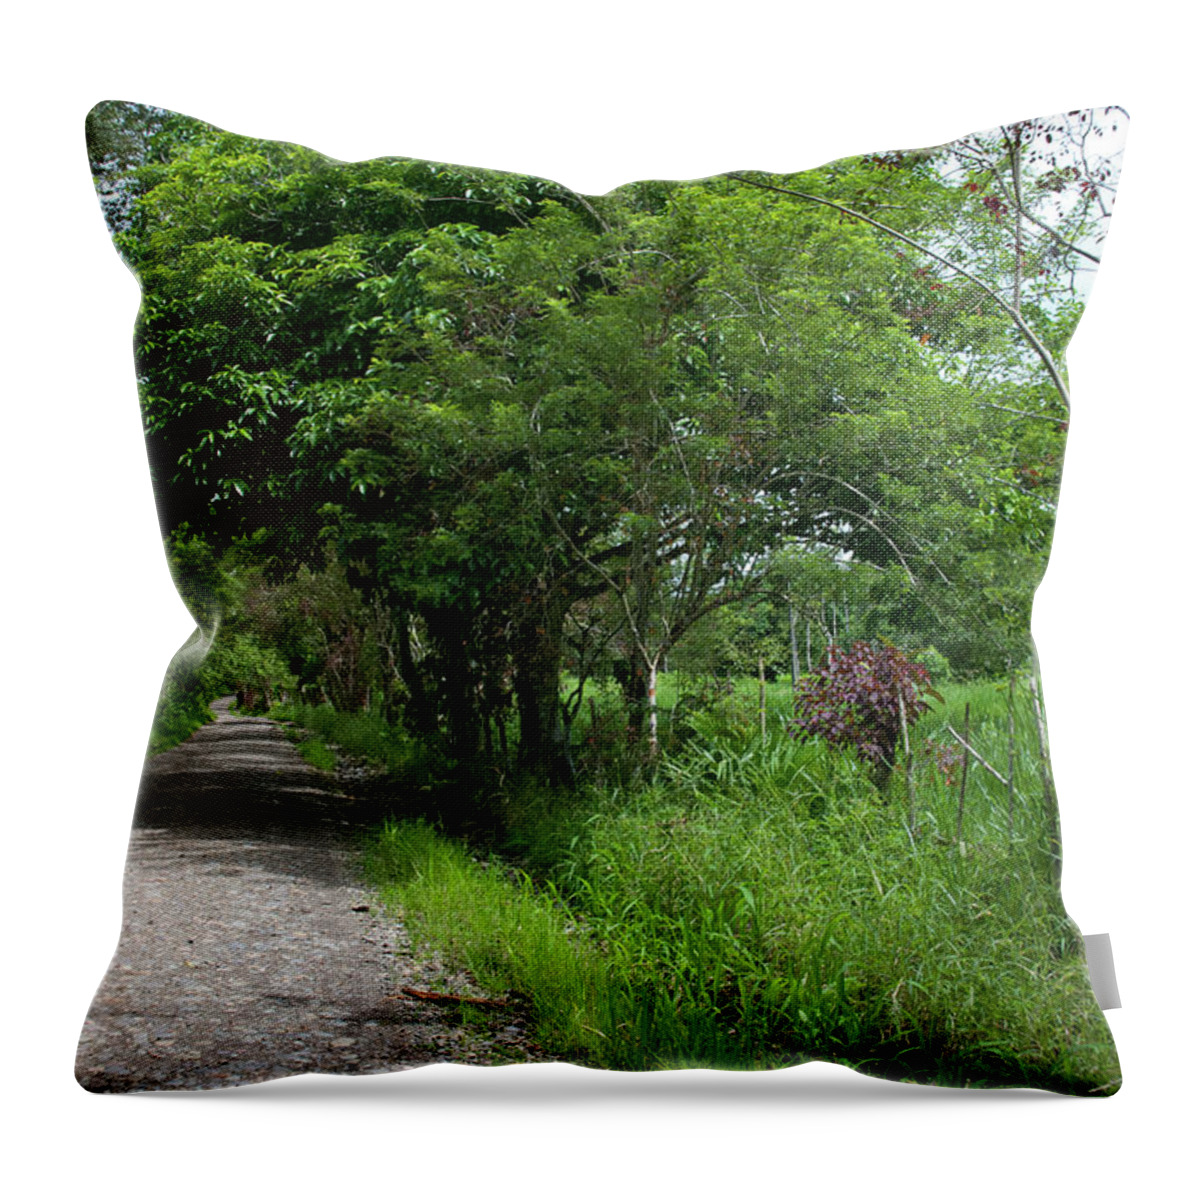 Ecuador Throw Pillow featuring the photograph Rural Ecuador near the Napo River by Cascade Colors